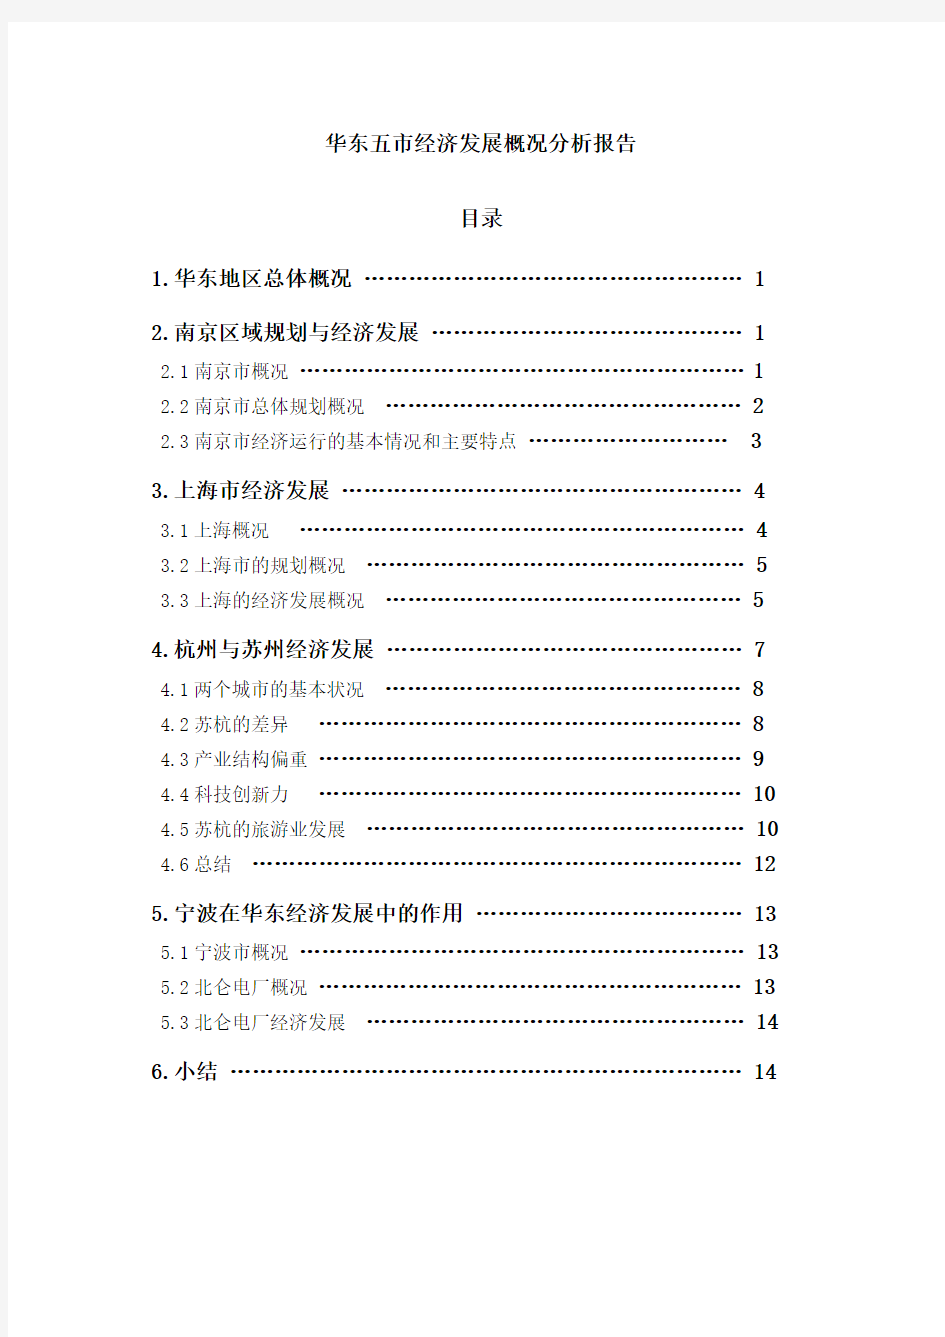 华东五市经济发展概况分析报告1